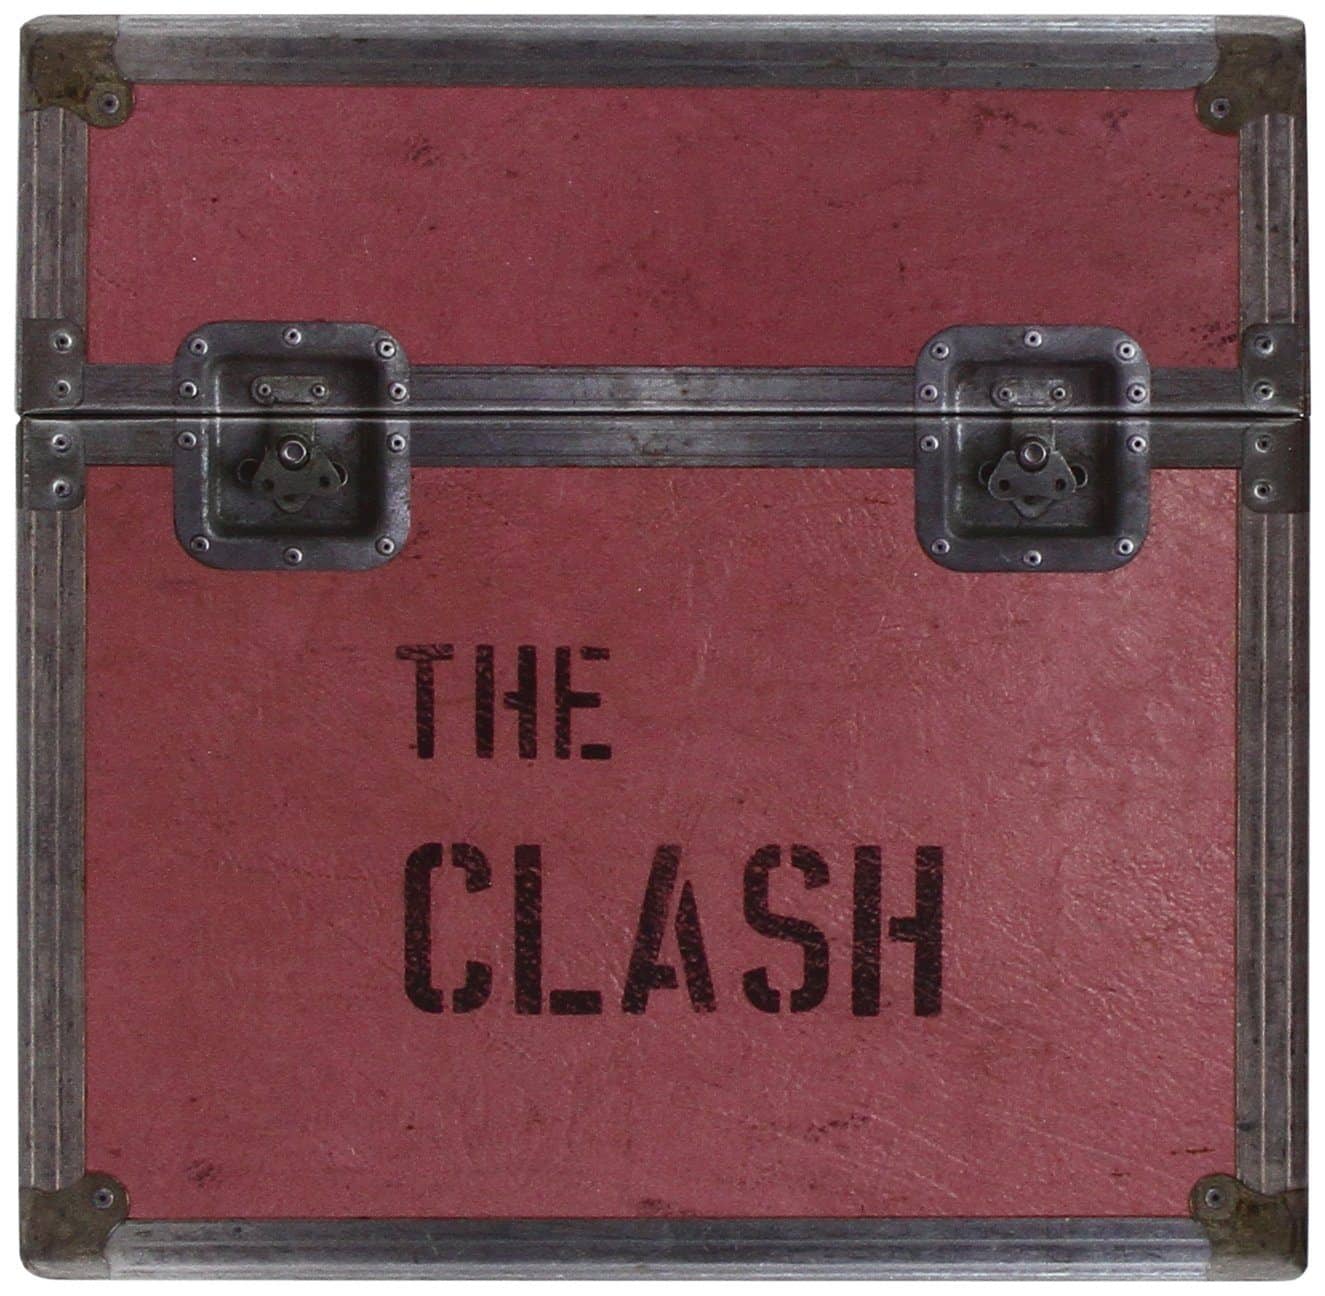 Caixa The Clash (5 álbuns de estúdio) na Amazon